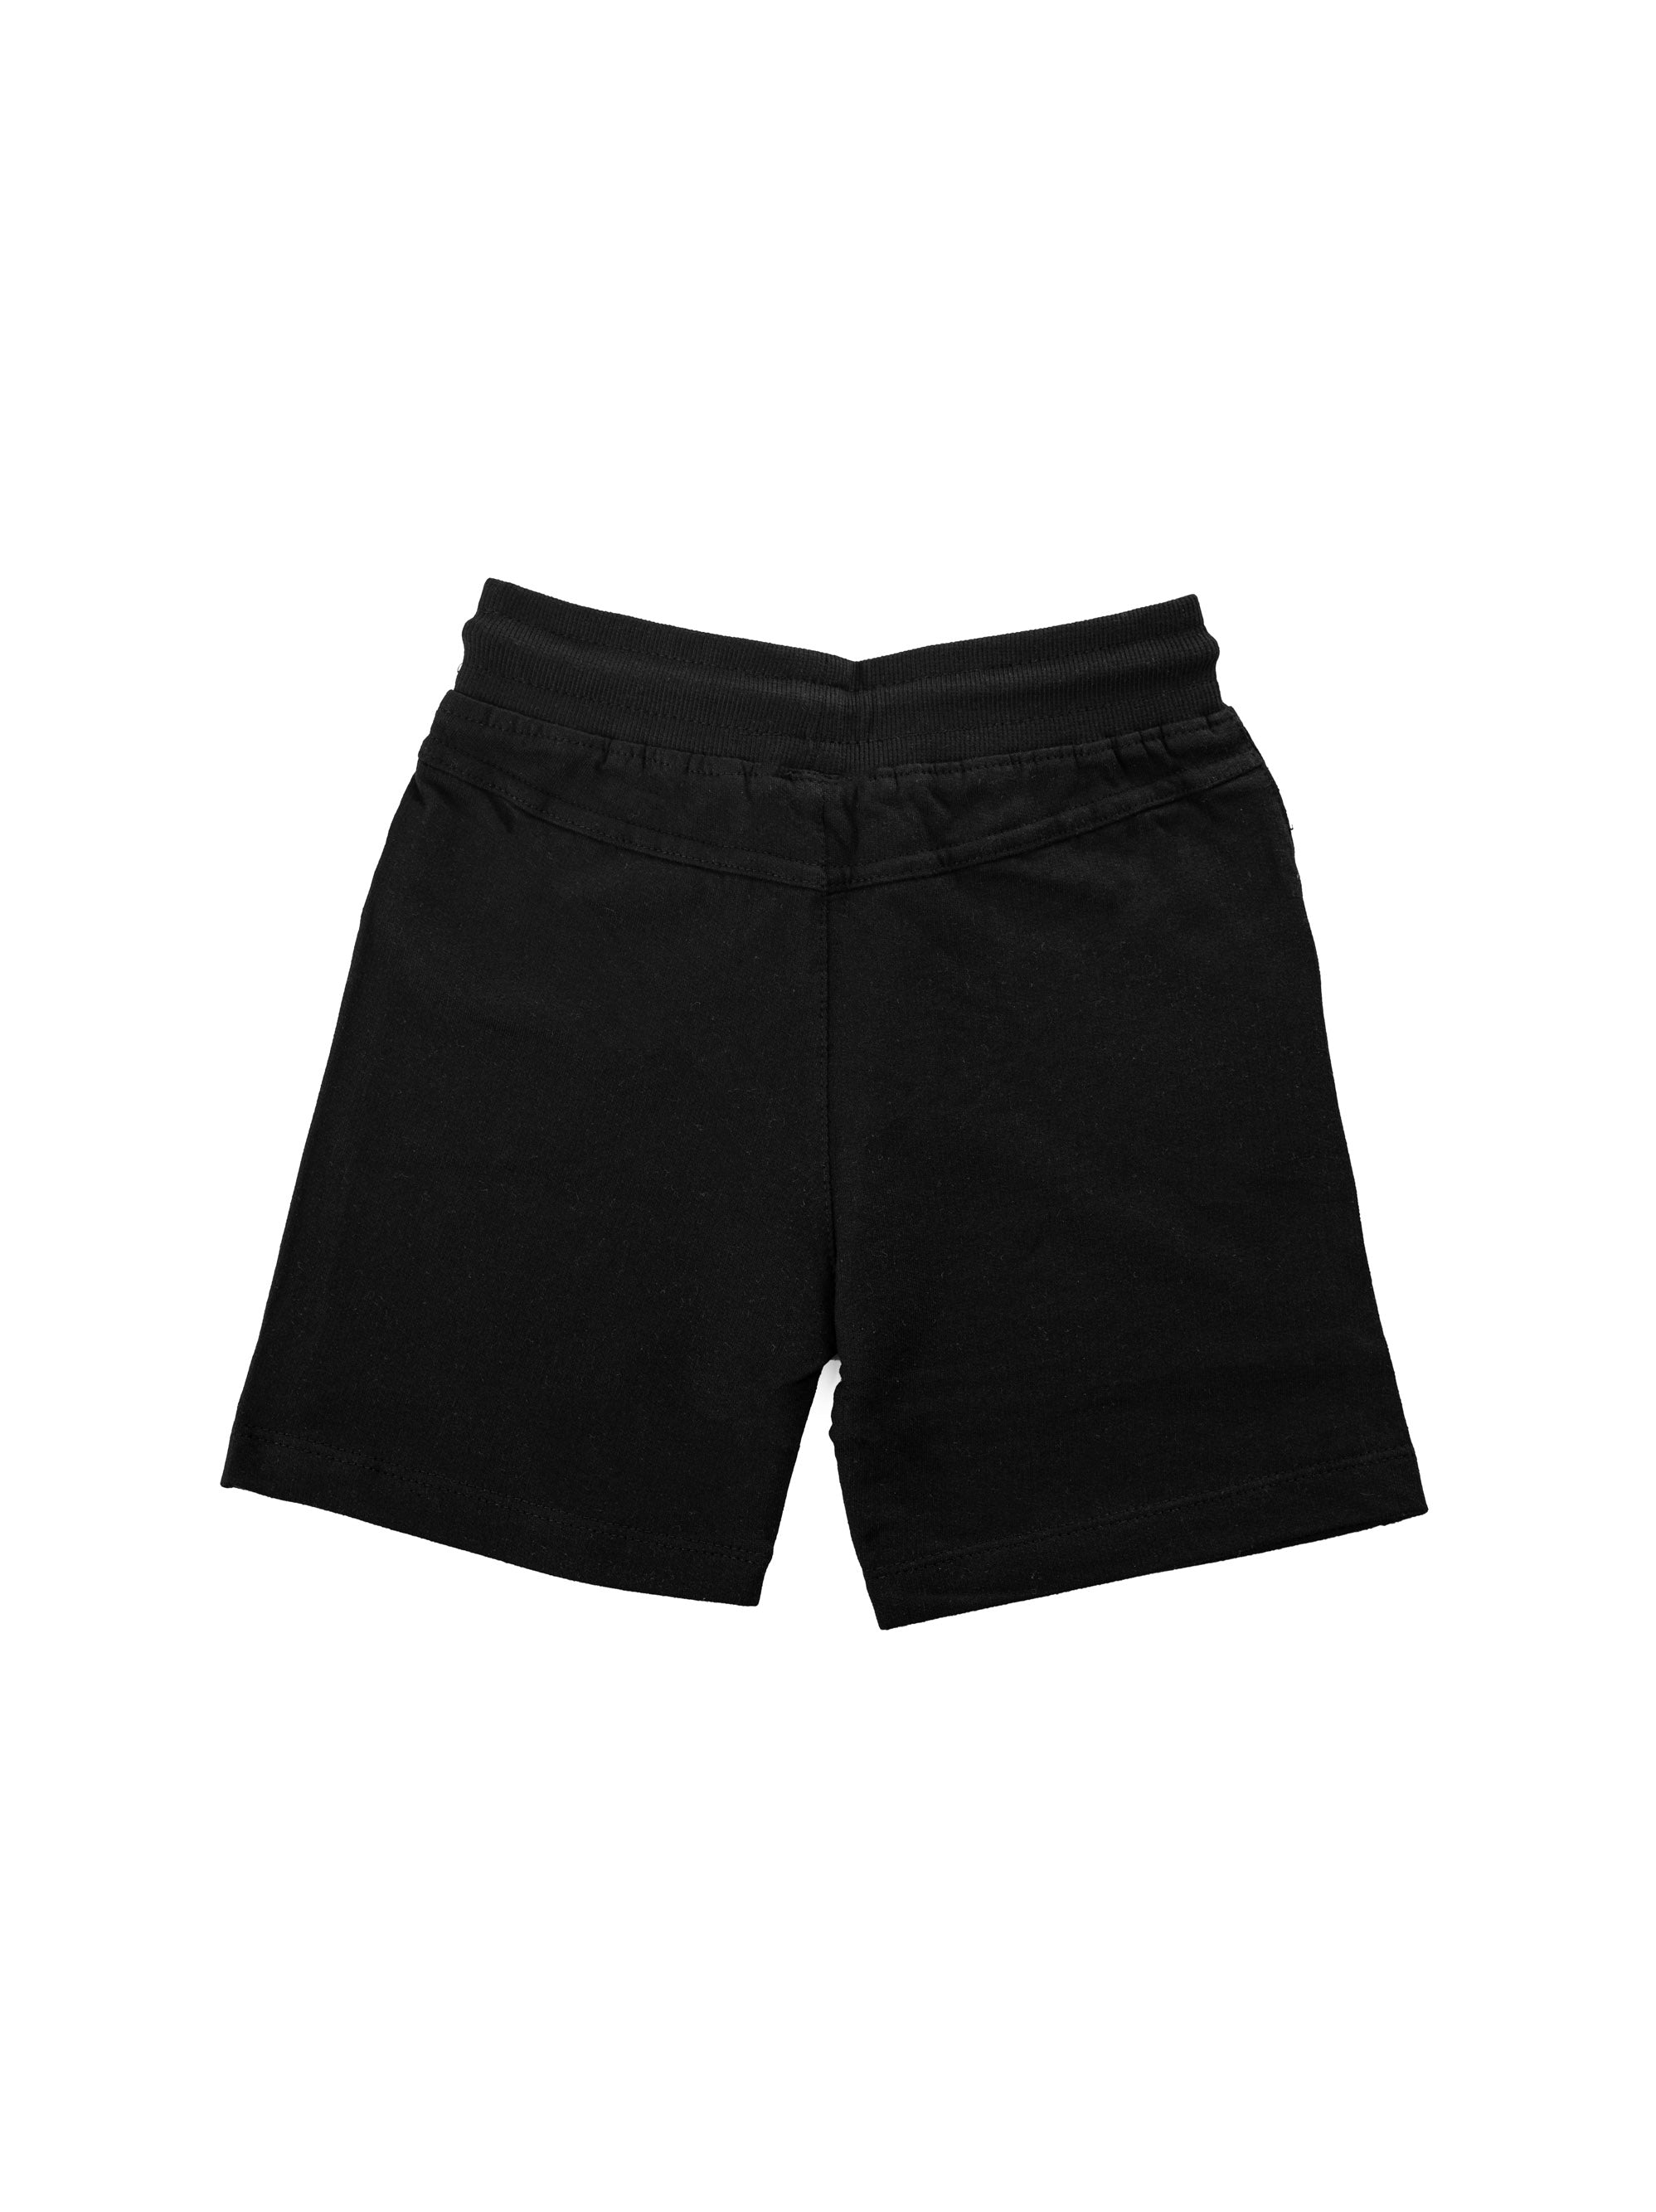 Shorts Black (Unisex)